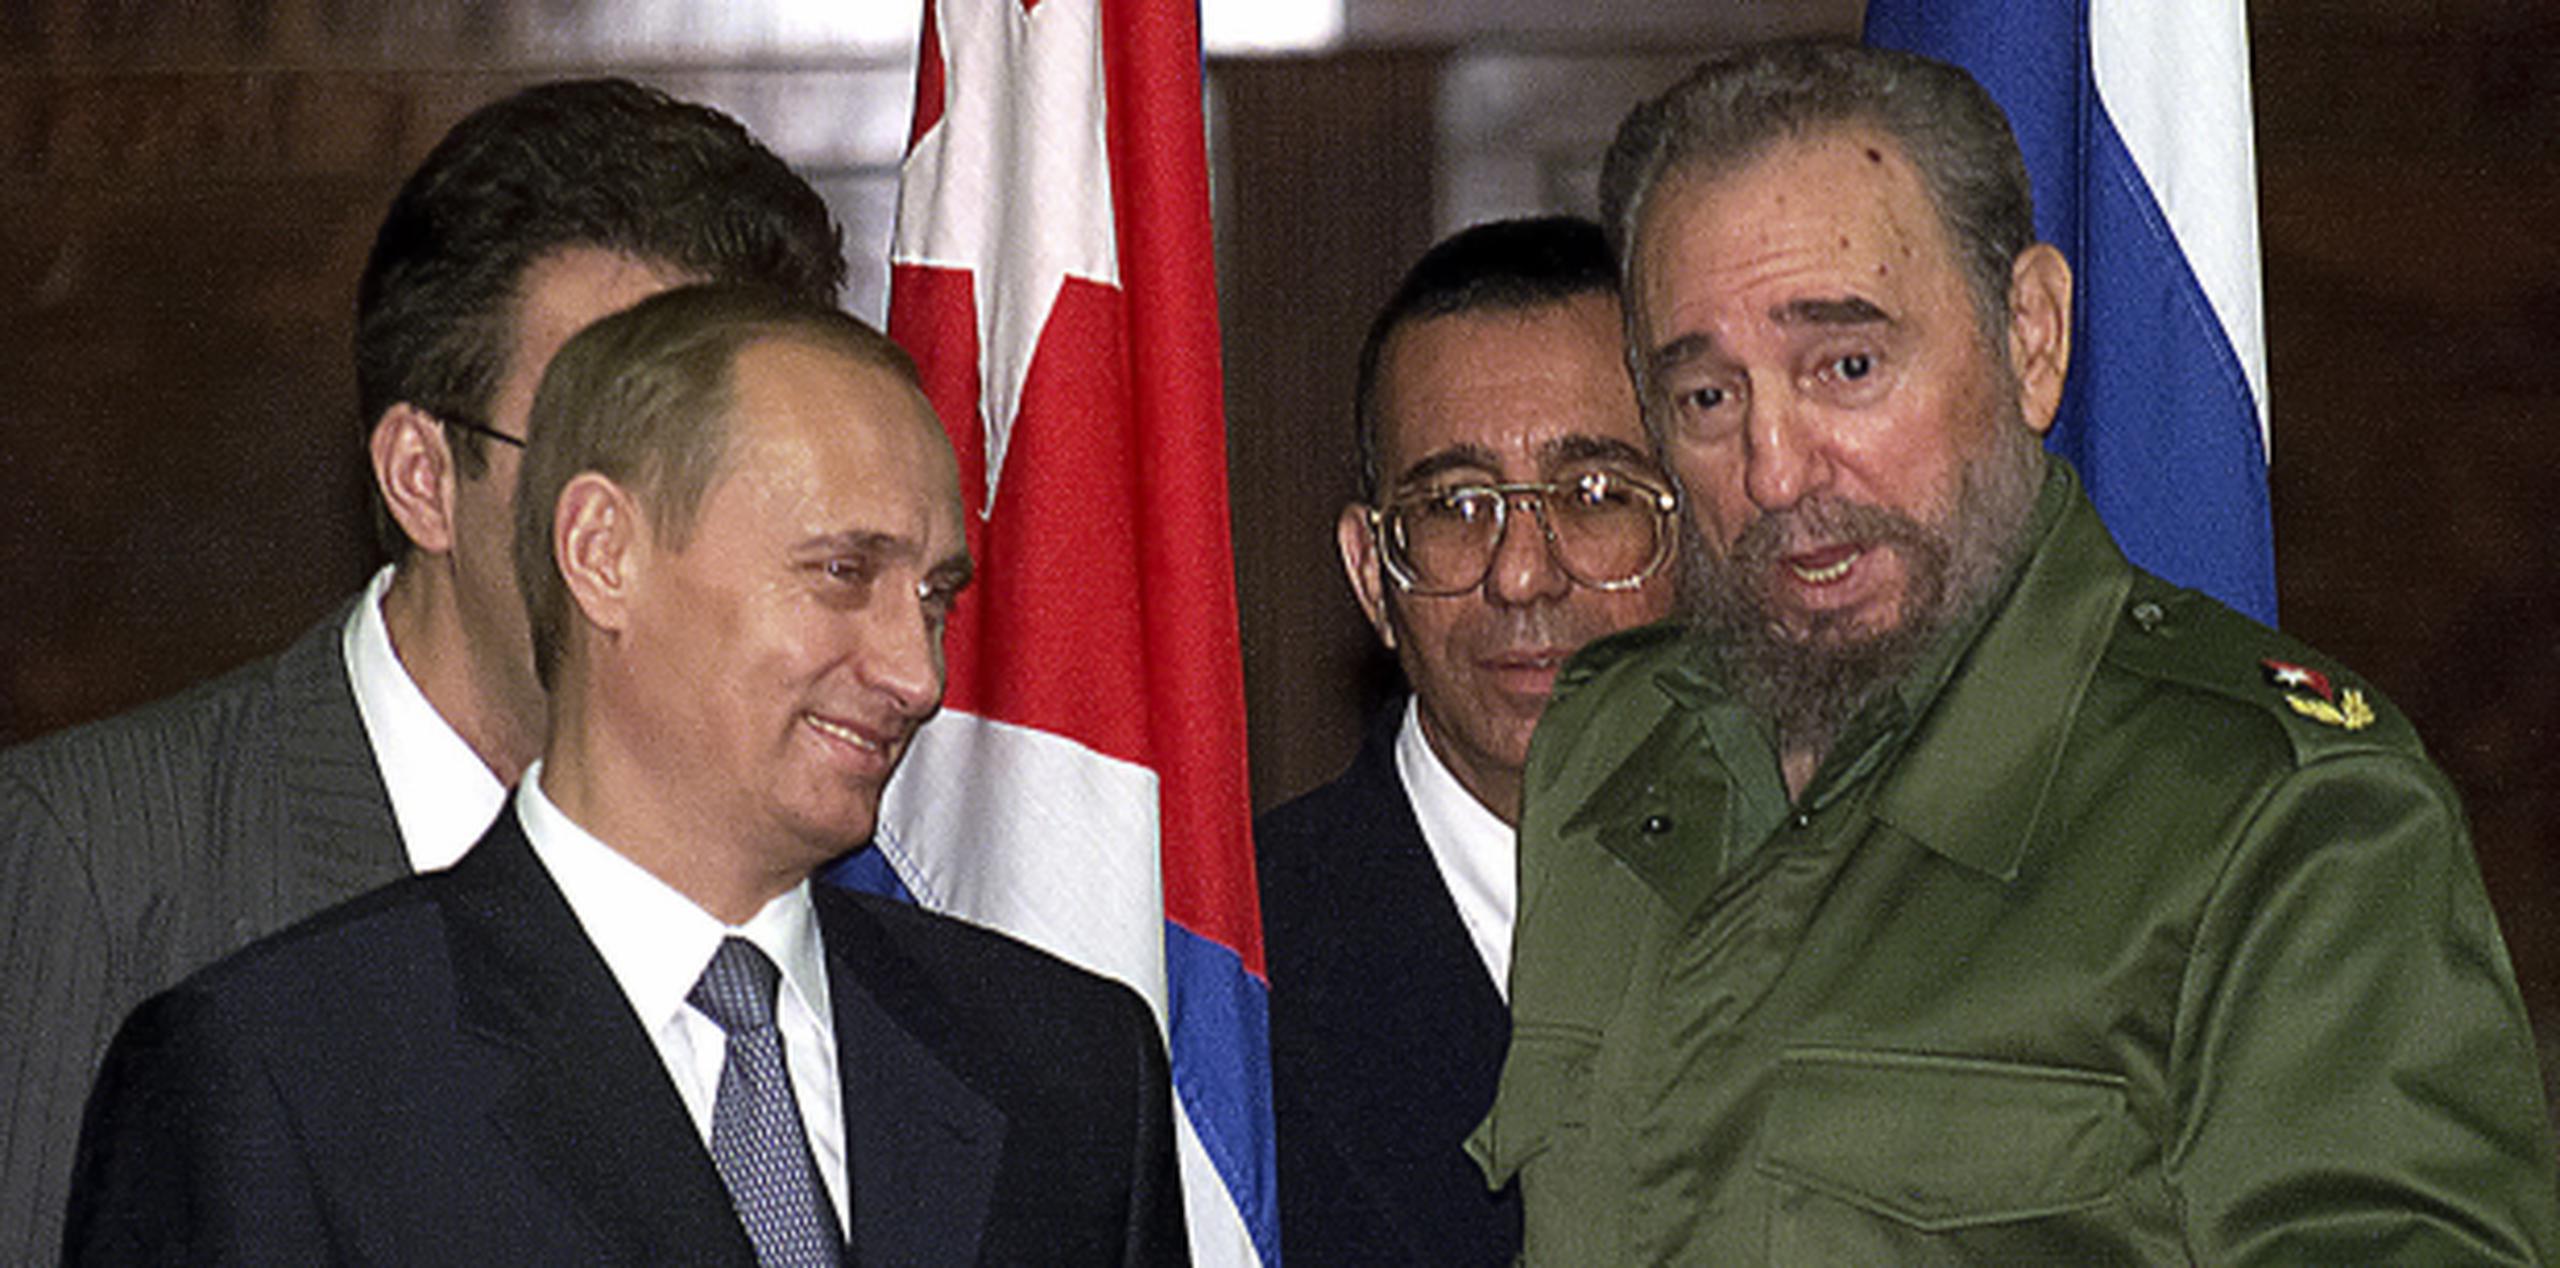 El presidente ruso Vladimir Putin calificó a Fidel Castro de símbolo de toda una época. (Archivo)